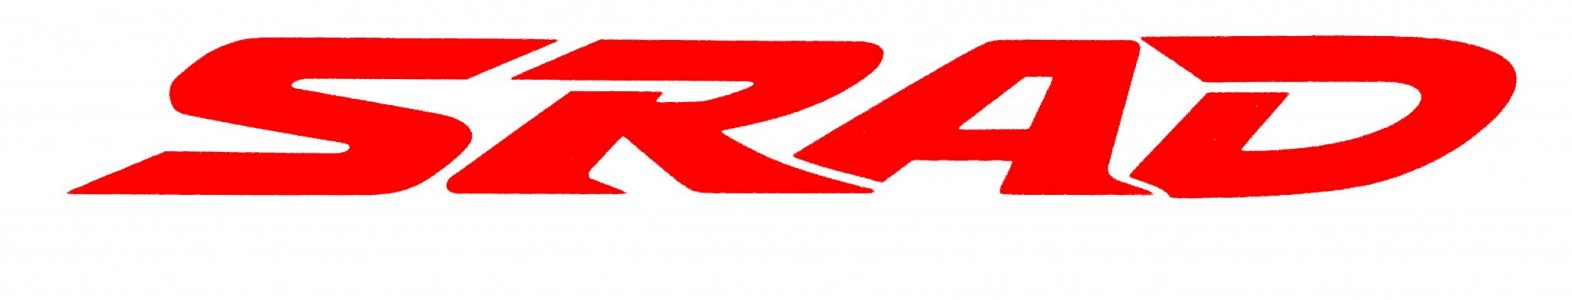 SRAD Logo.jpg